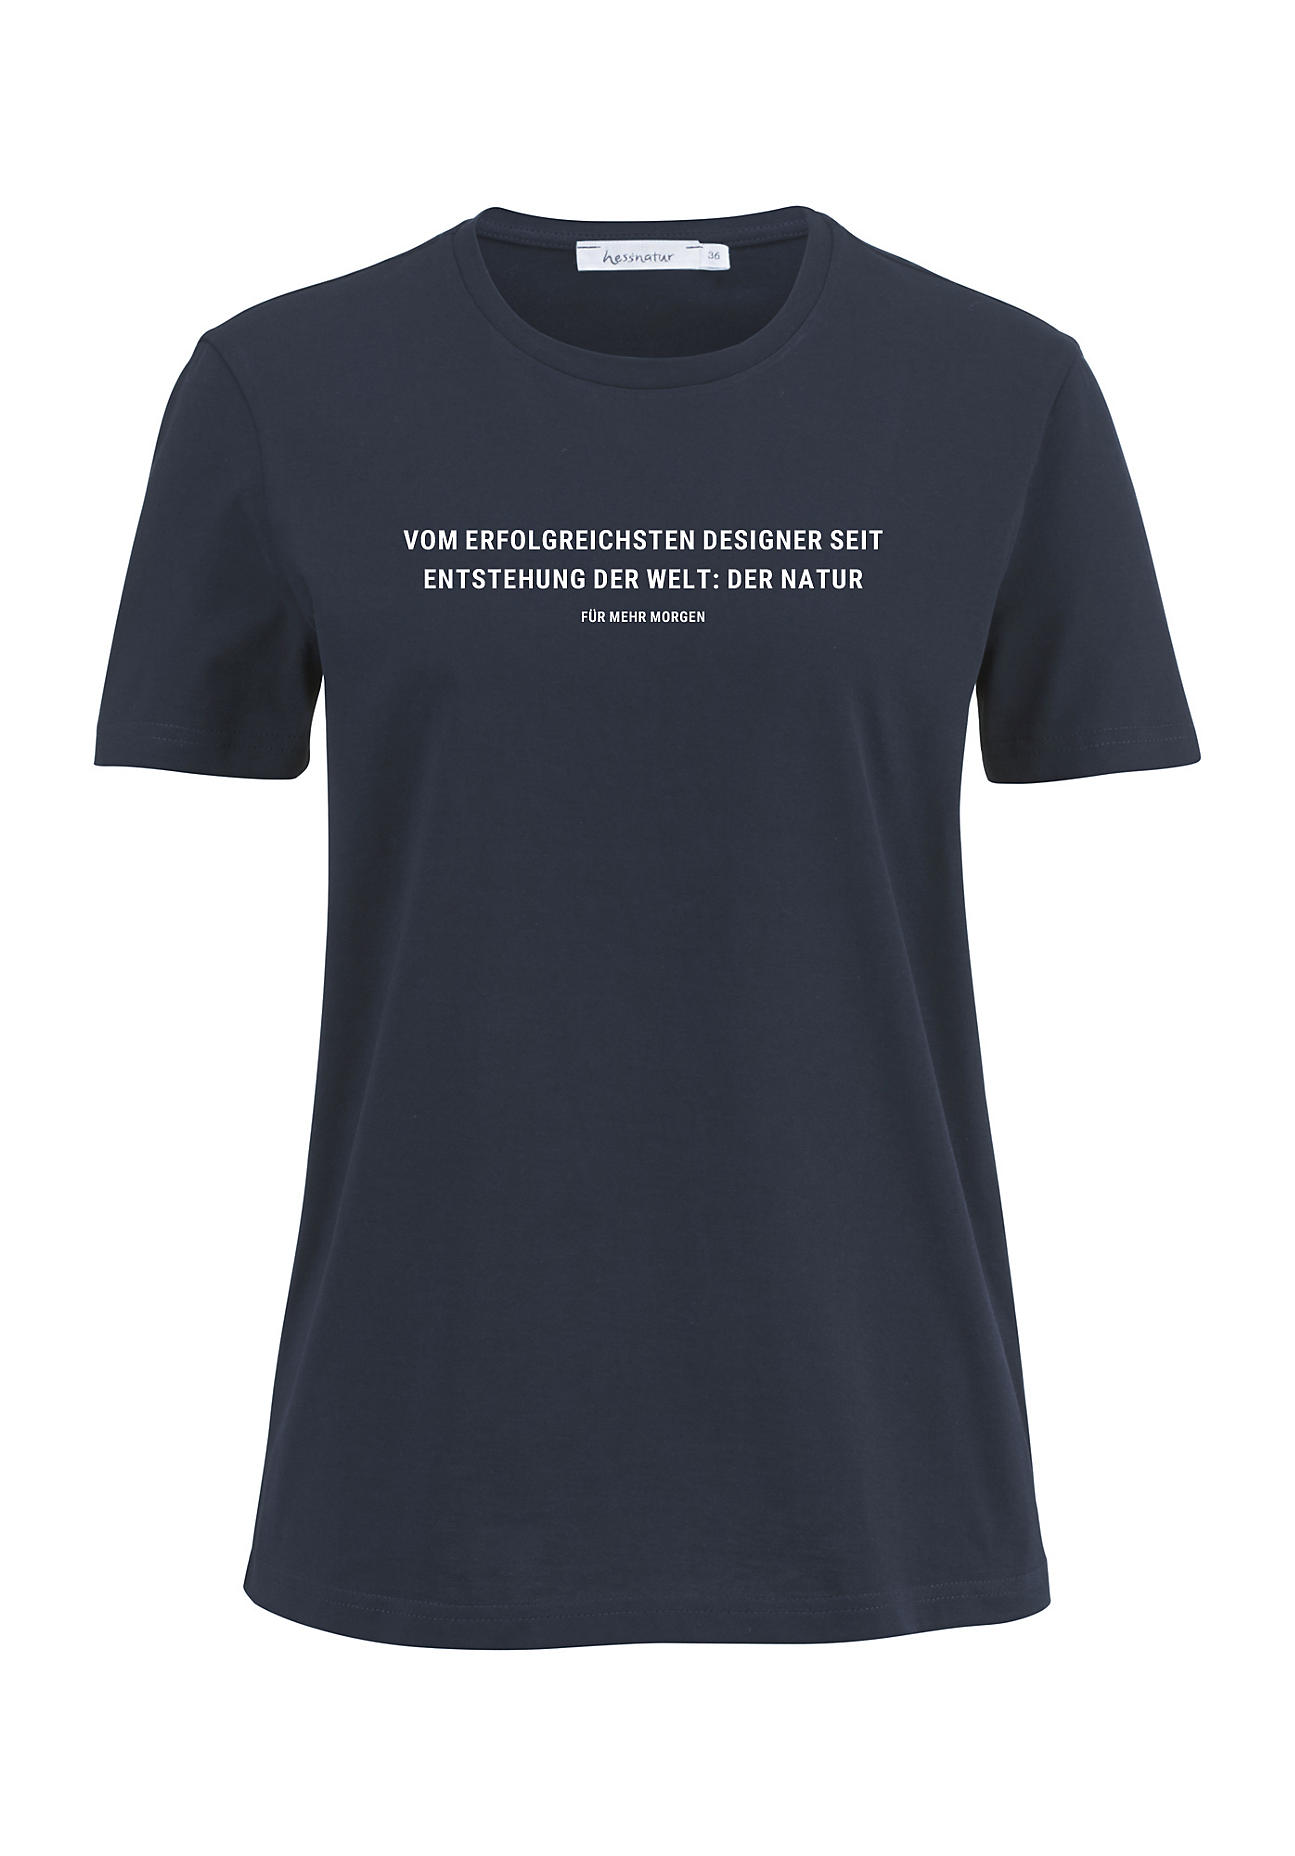 hessnatur Damen Statement Shirt aus Bio-Baumwolle - blau - Größe 34